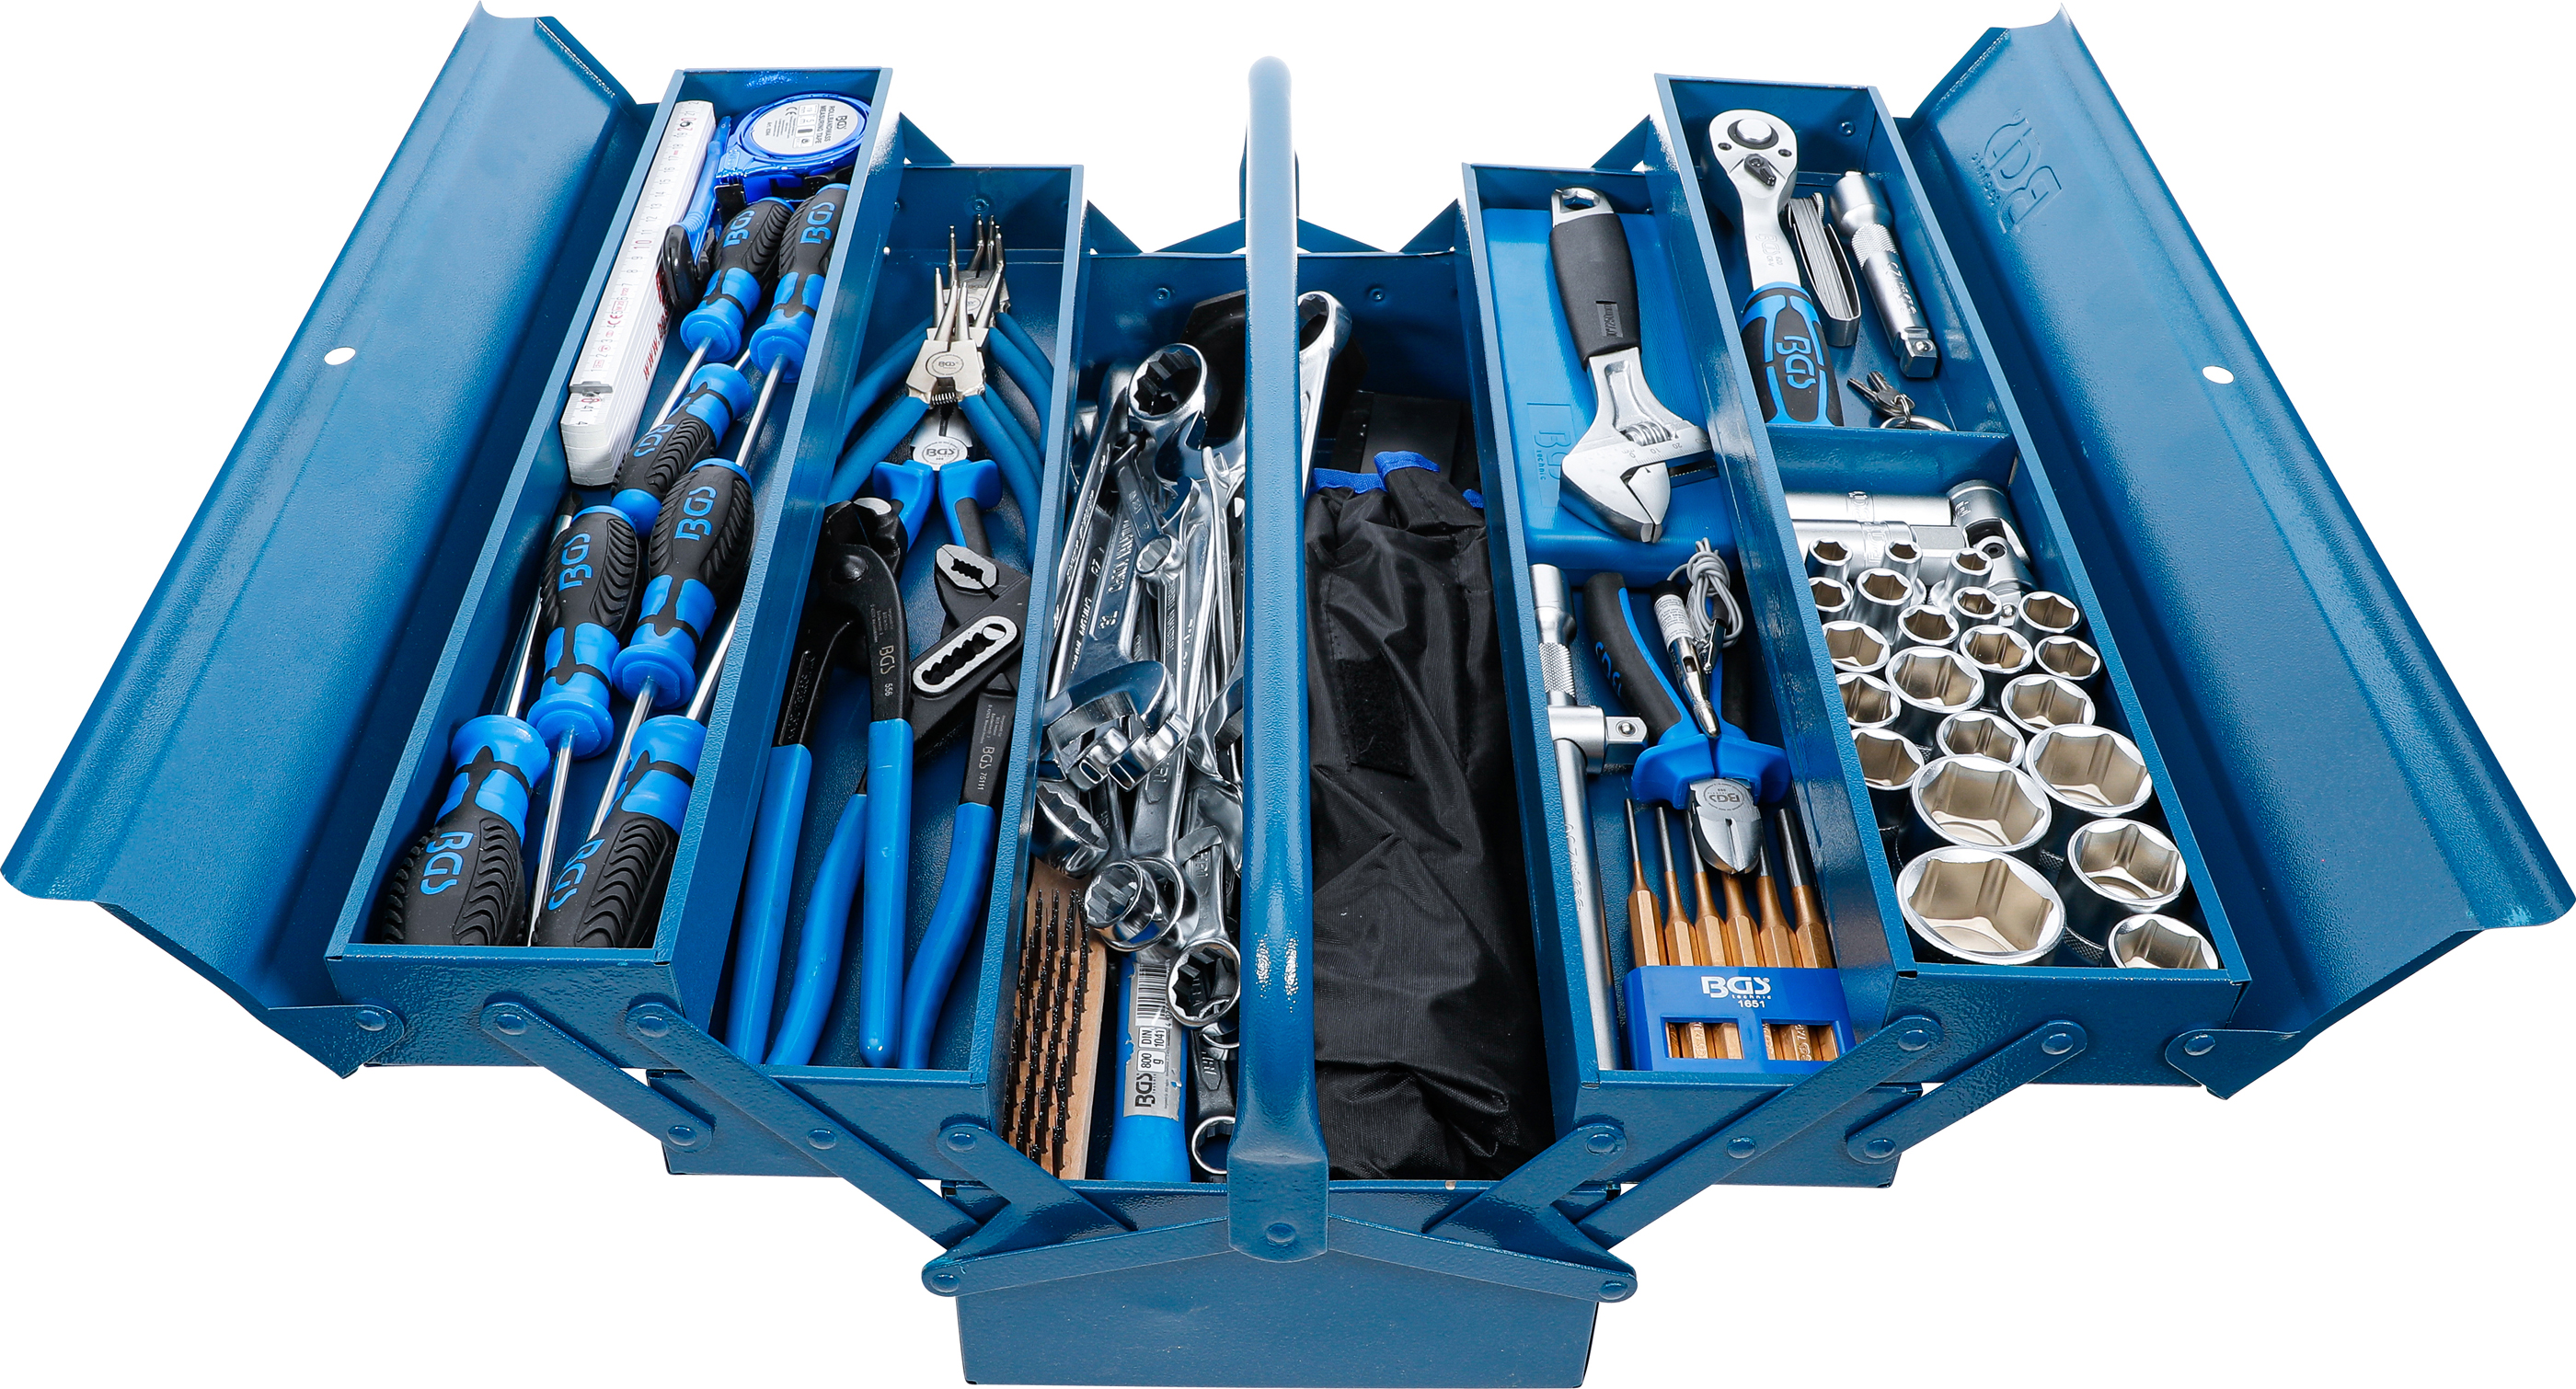 BGS technic | Metallinen työkalulaatikko, joka sisältää työkalulajitelman |  137-os. | purchase online